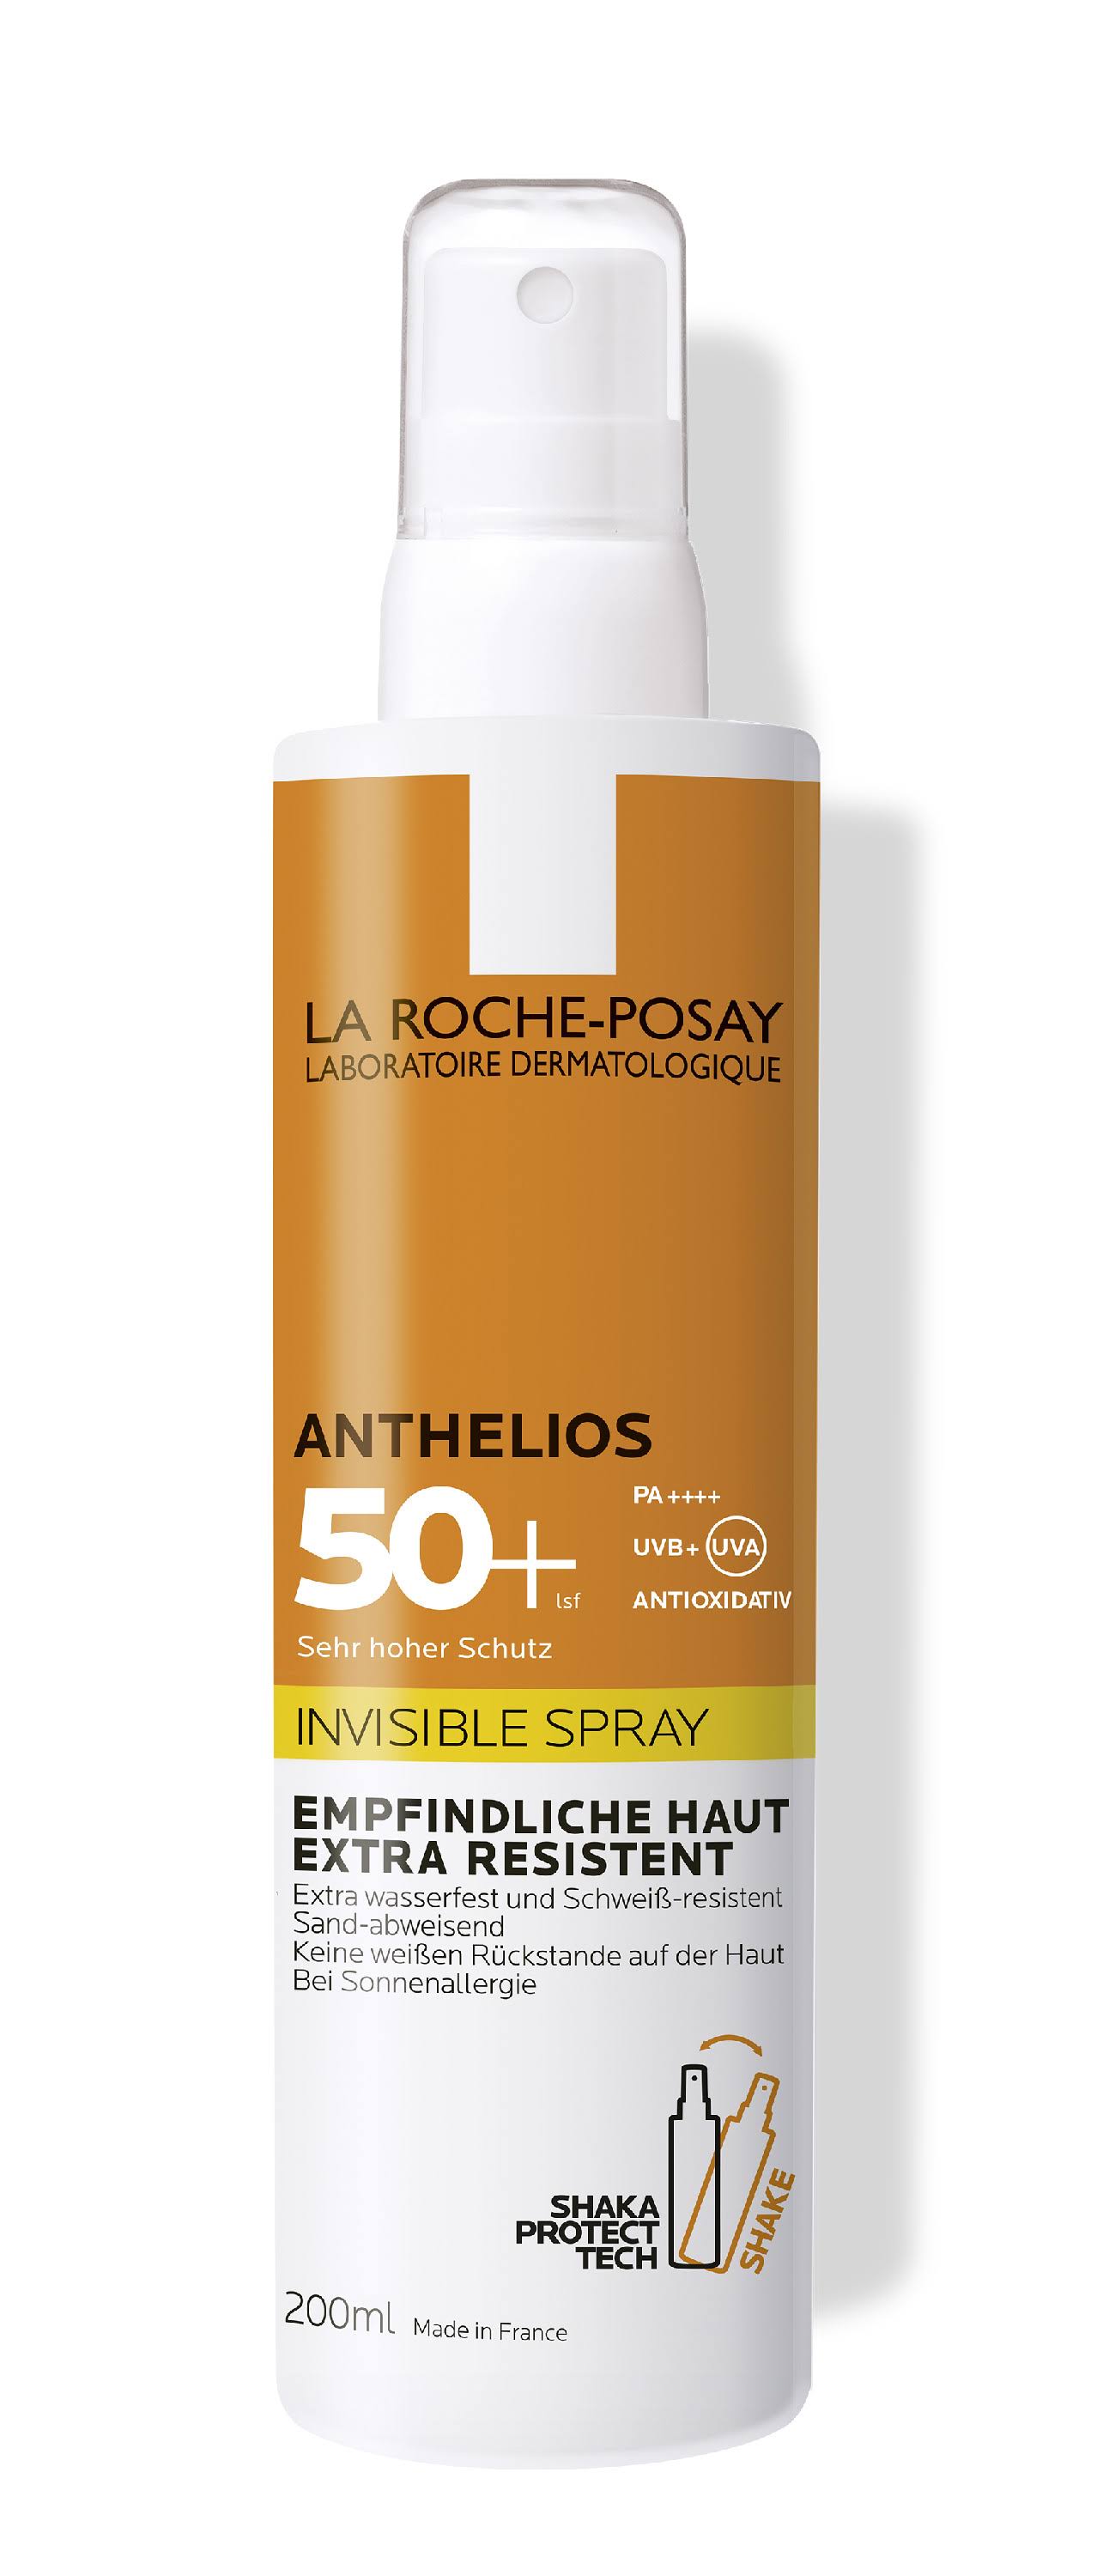 La Roche Posay - Anthelios Invisible Spray SPF50+ 200ml